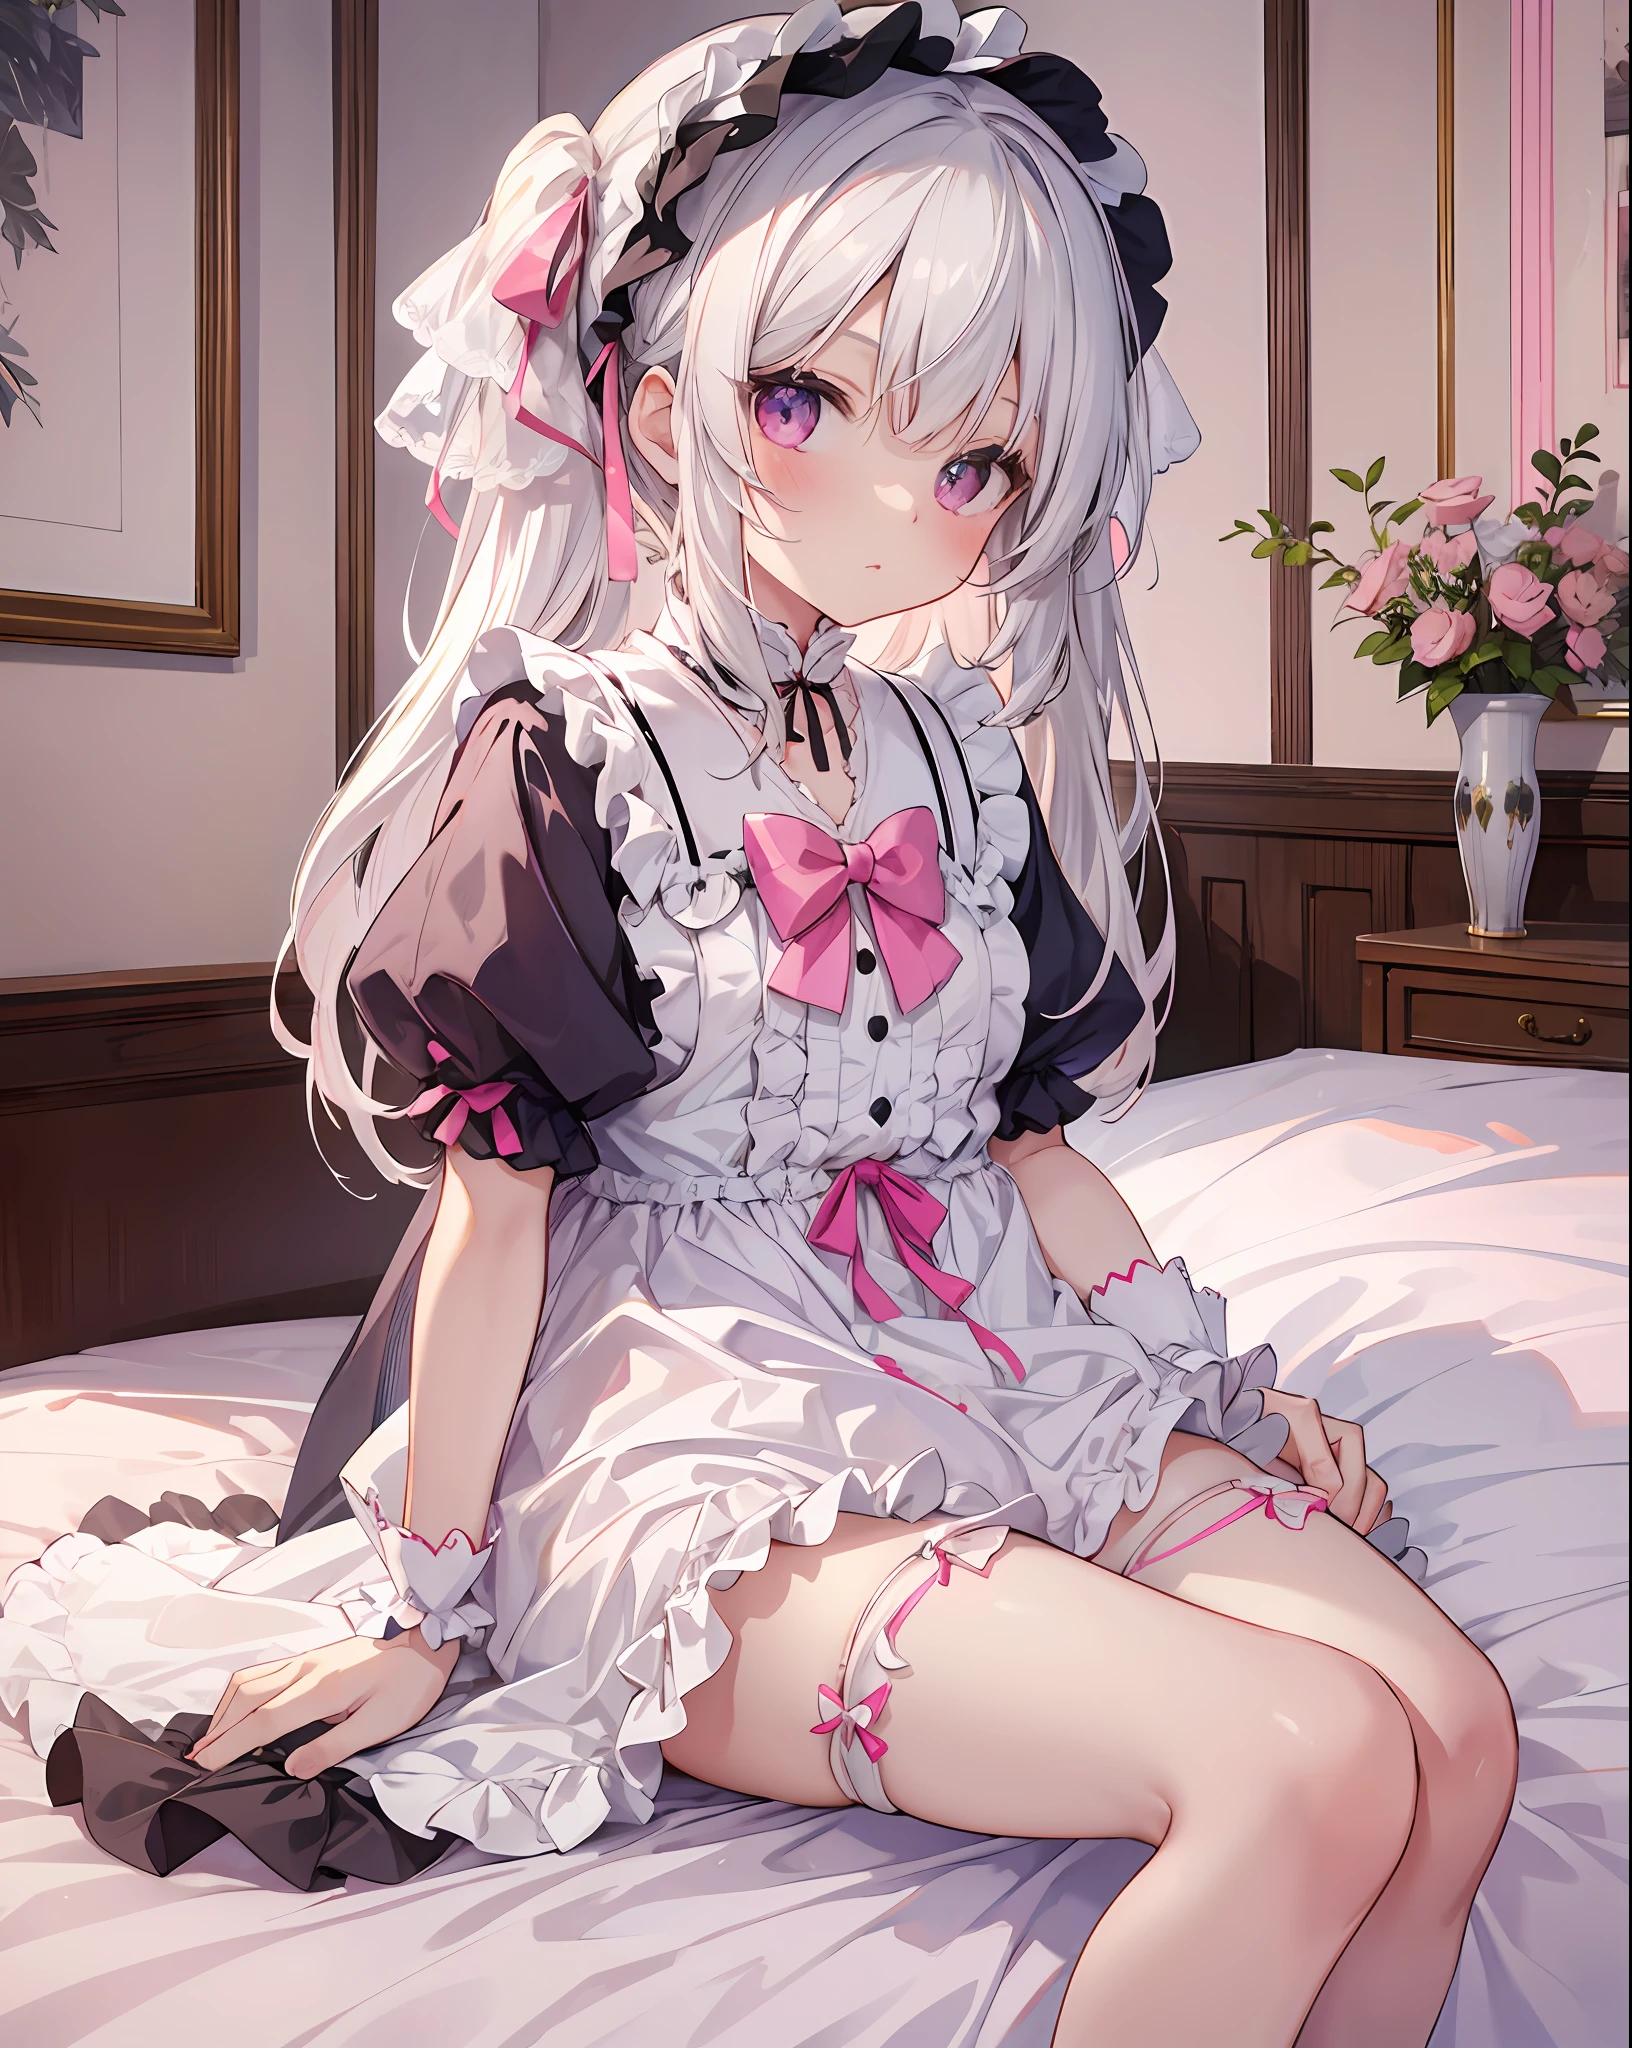 Um fofo de cabelos brancos ，Vestida de lolita e seda branca，Sentado ao lado da cama，Calcinha rosa pode ser vista